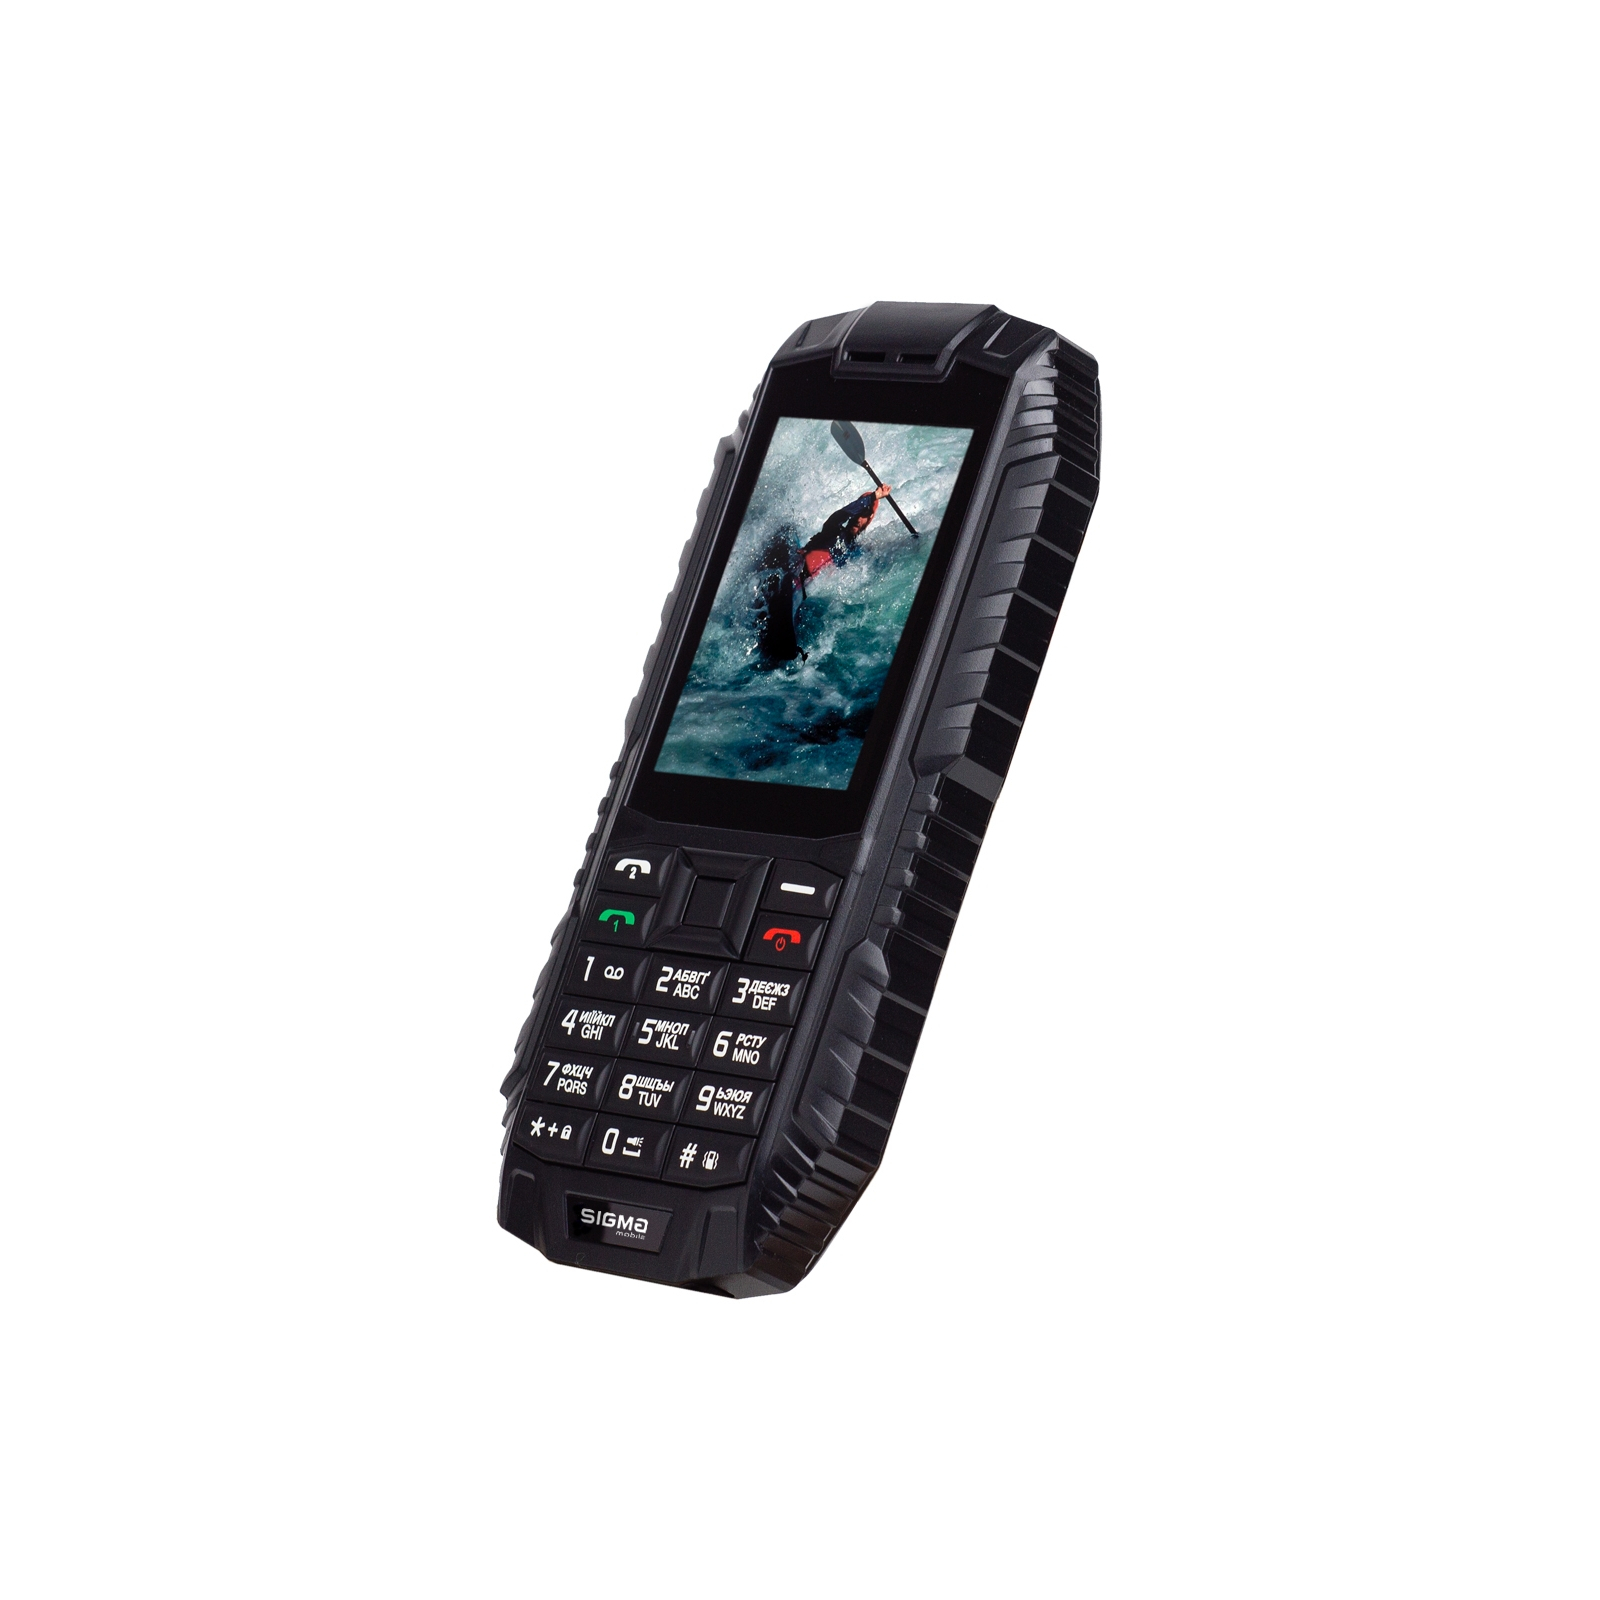 Мобильный телефон Sigma X-treme DT68 Black Red (4827798337721) изображение 3